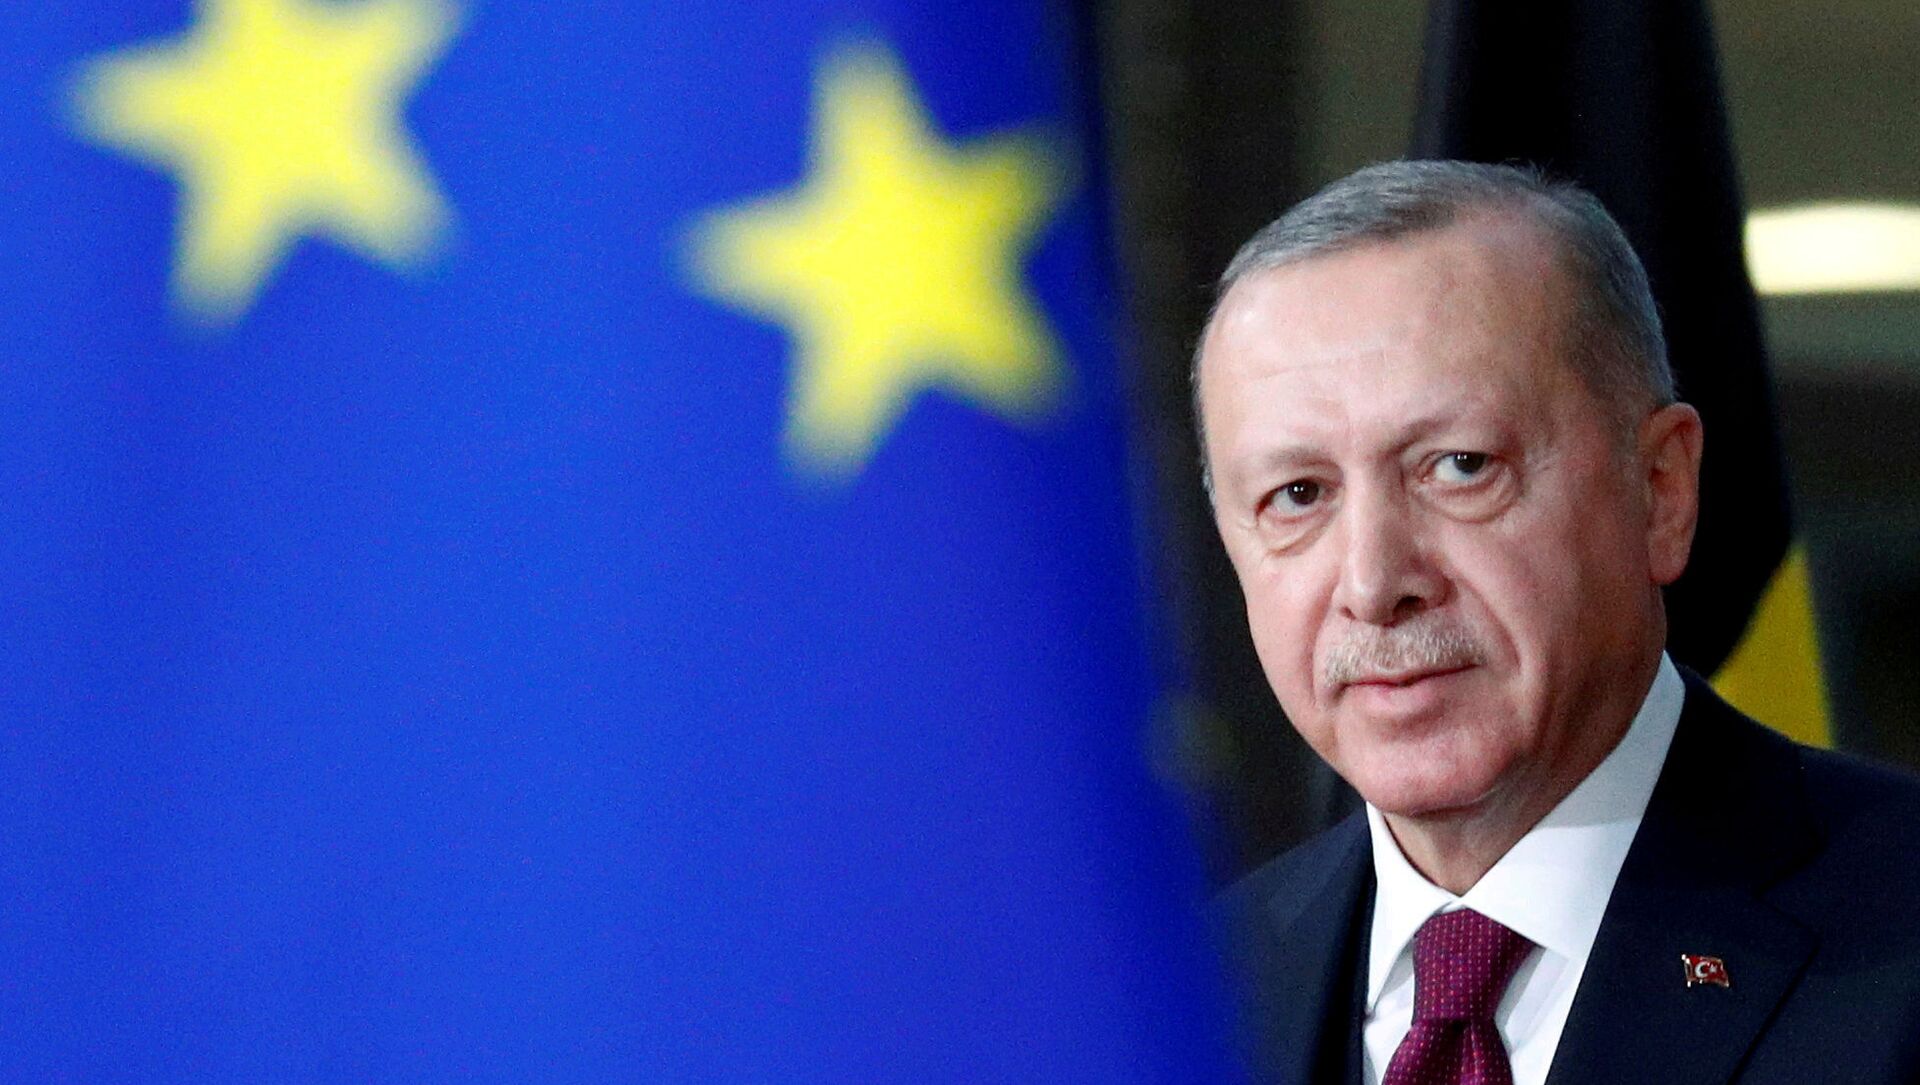 Президент Турции Тайип Эрдоган прибывает на встречу с президентом Совета ЕС Шарлем Мишелем в Брюссель, Бельгия, 9 марта 2020 г - Sputnik Аҧсны, 1920, 01.07.2021